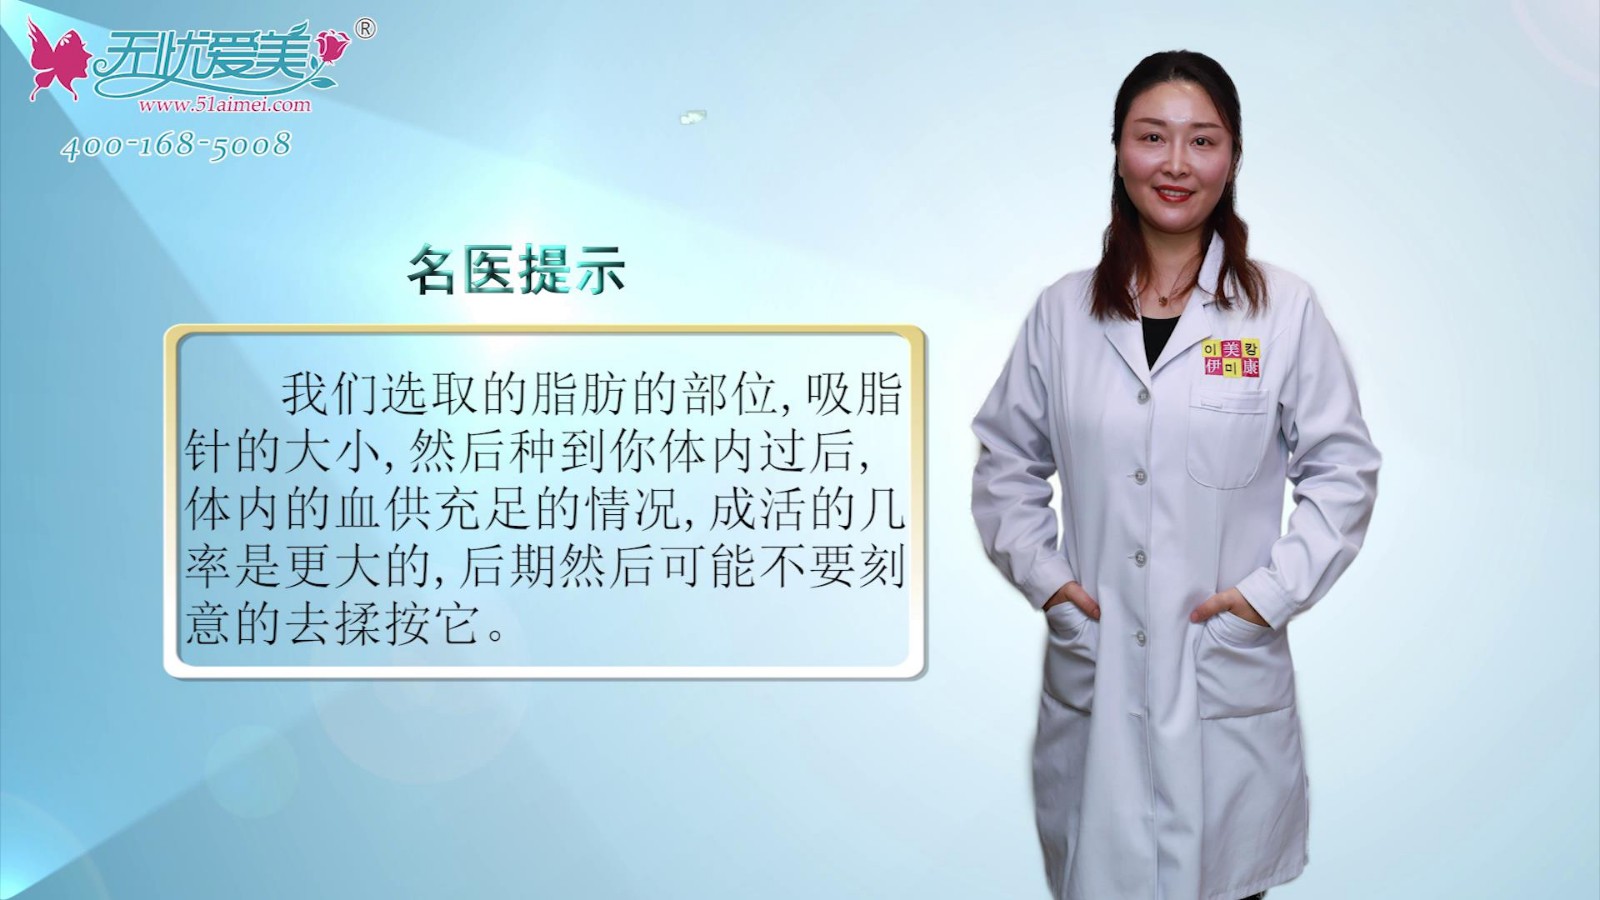 彩贝专访北京伊美康视频解答自体脂肪填充面部能维持多久